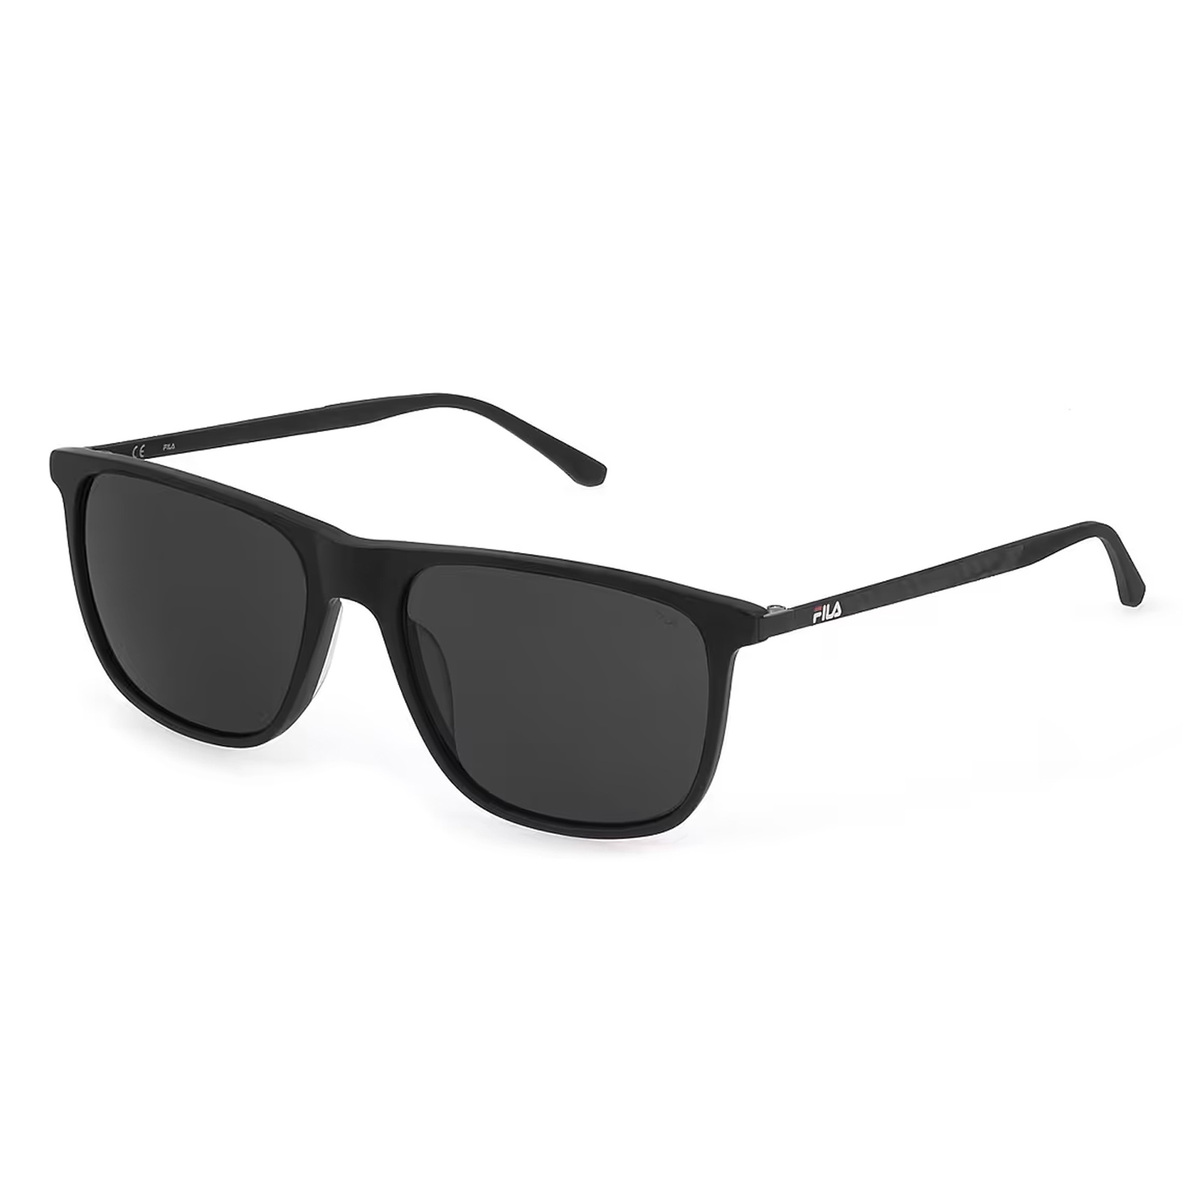 Fila Men's Square Sunglasses, Smoke, I299 570703 Sqr Bk